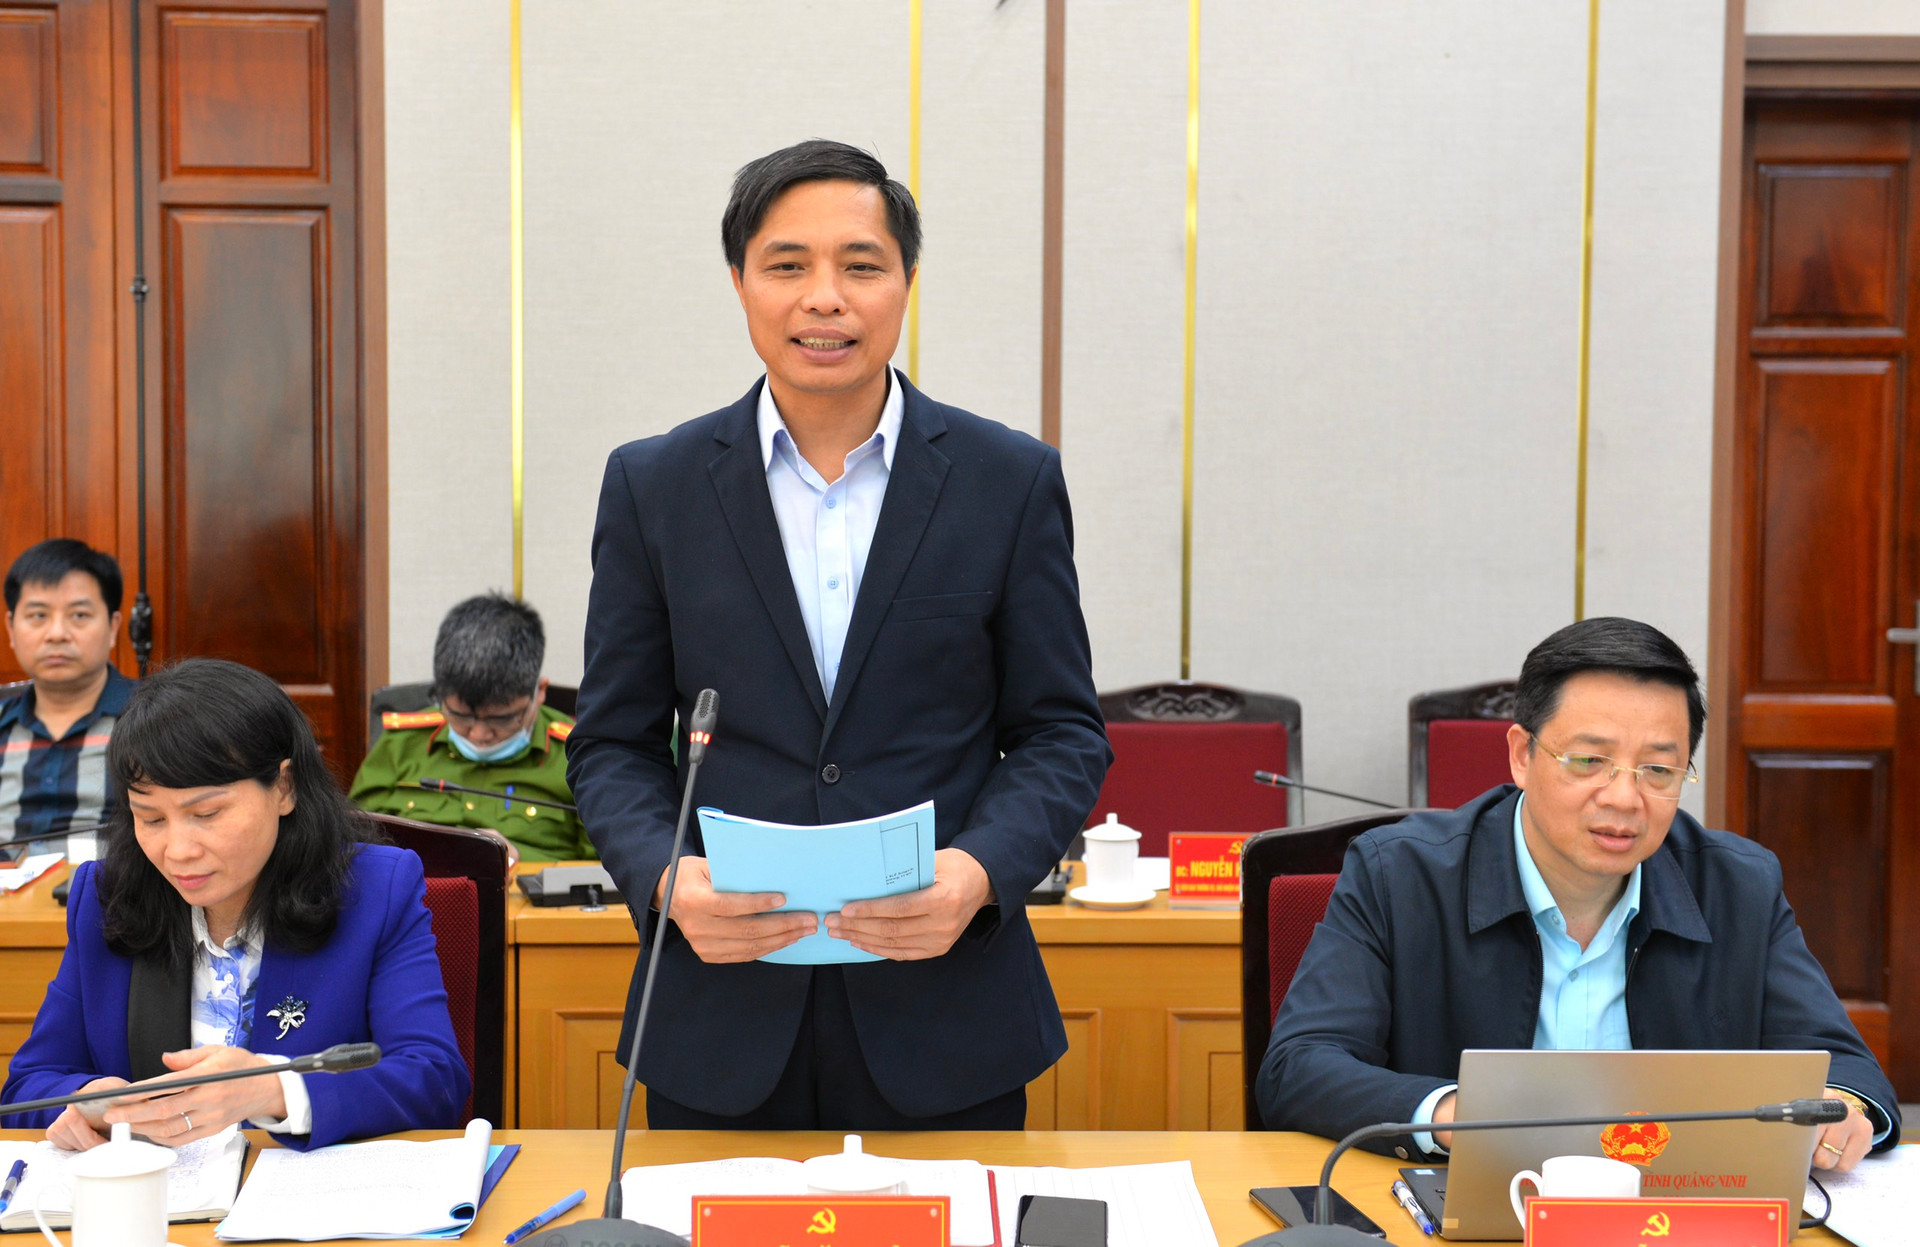 Ông Vũ Văn Diện, Bí thư Thành ủy Hạ Long báo cáo, làm rõ thêm một số nội dung triển khai công tác bầu cử trên địa bàn thành phố Hạ Long.